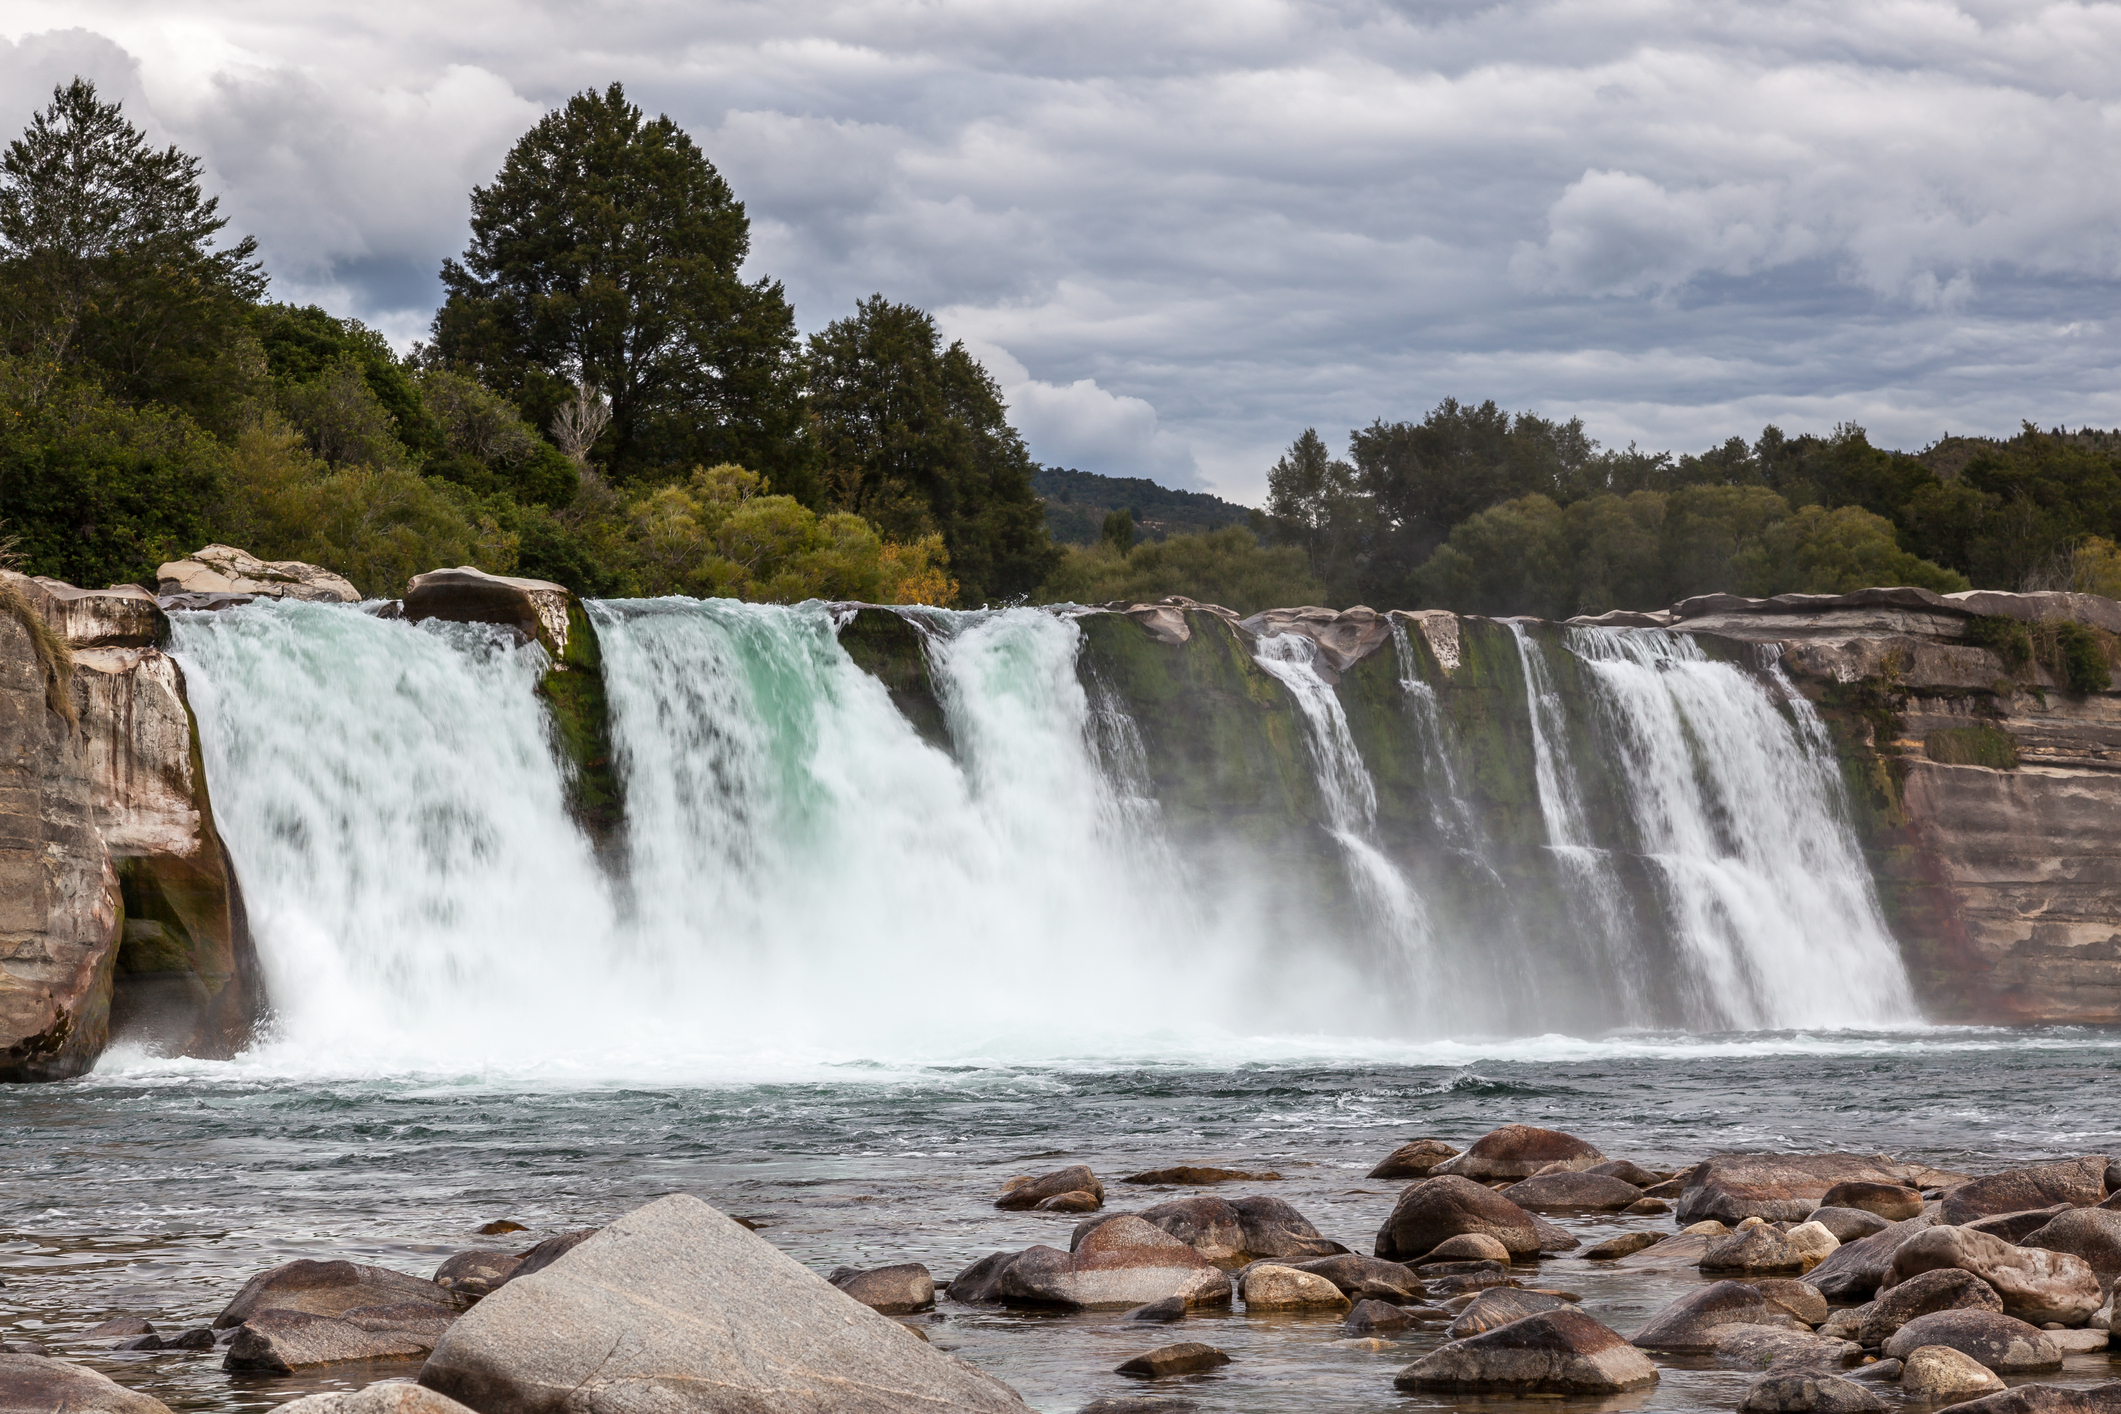 Maruia waterfall in New Zealand